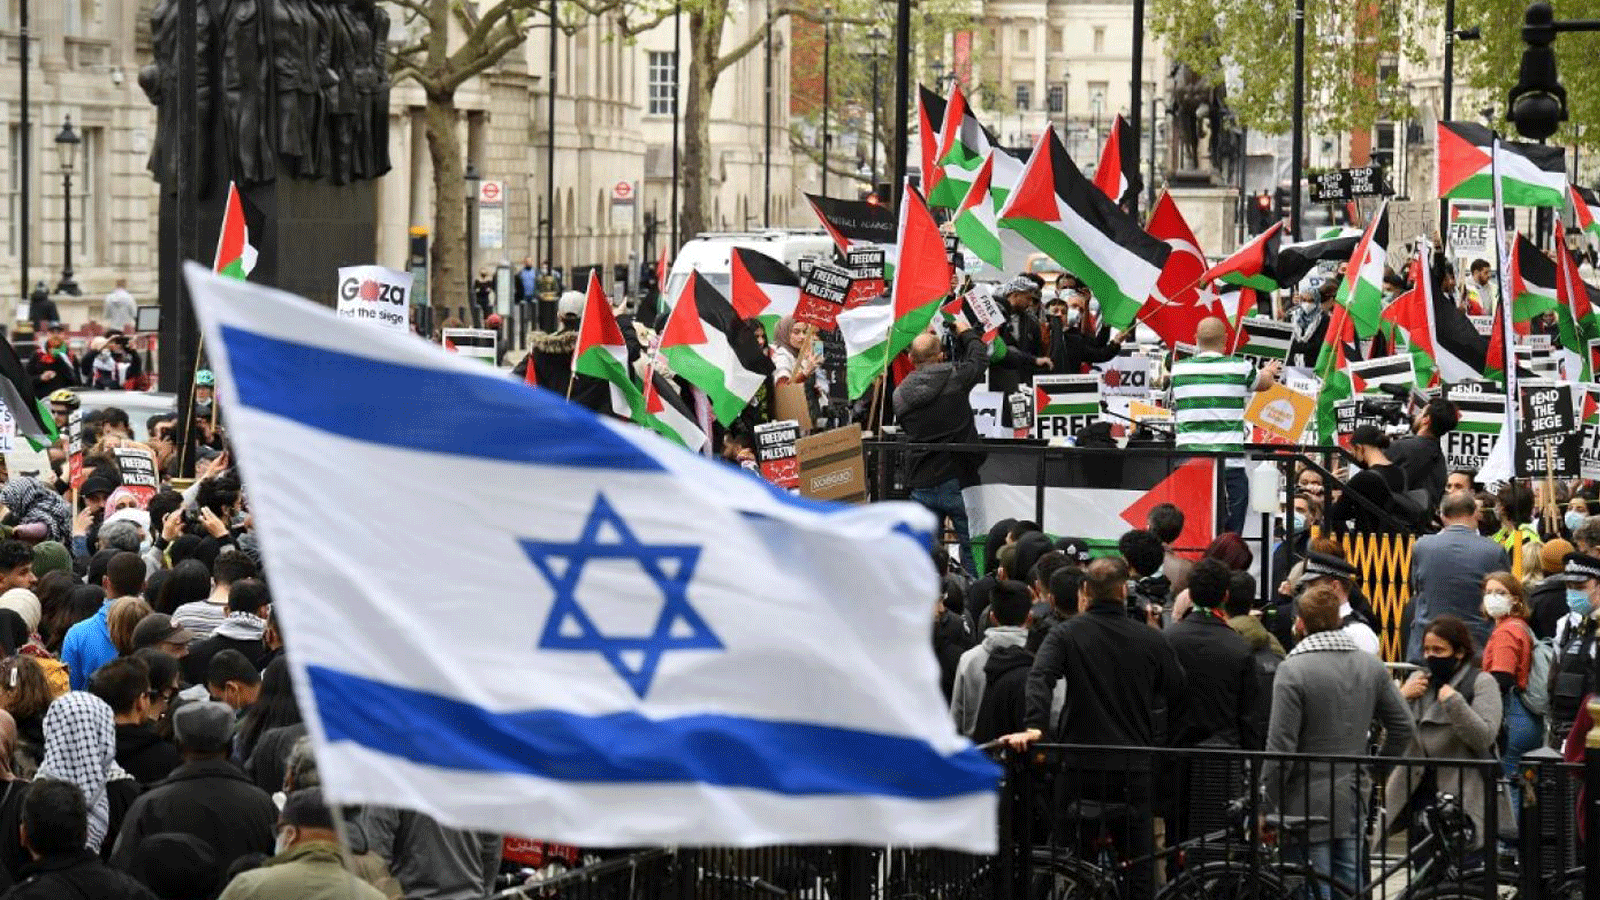 نشطاء مؤيدون لإسرائيل يلوحون بالعلم الإسرائيلي بينما يتظاهر النشطاء المؤيدون للفلسطينيين ضد الهجمات الإسرائيلية الأخيرة على الفلسطينيين، في وسط لندن في 11 مايو 2021